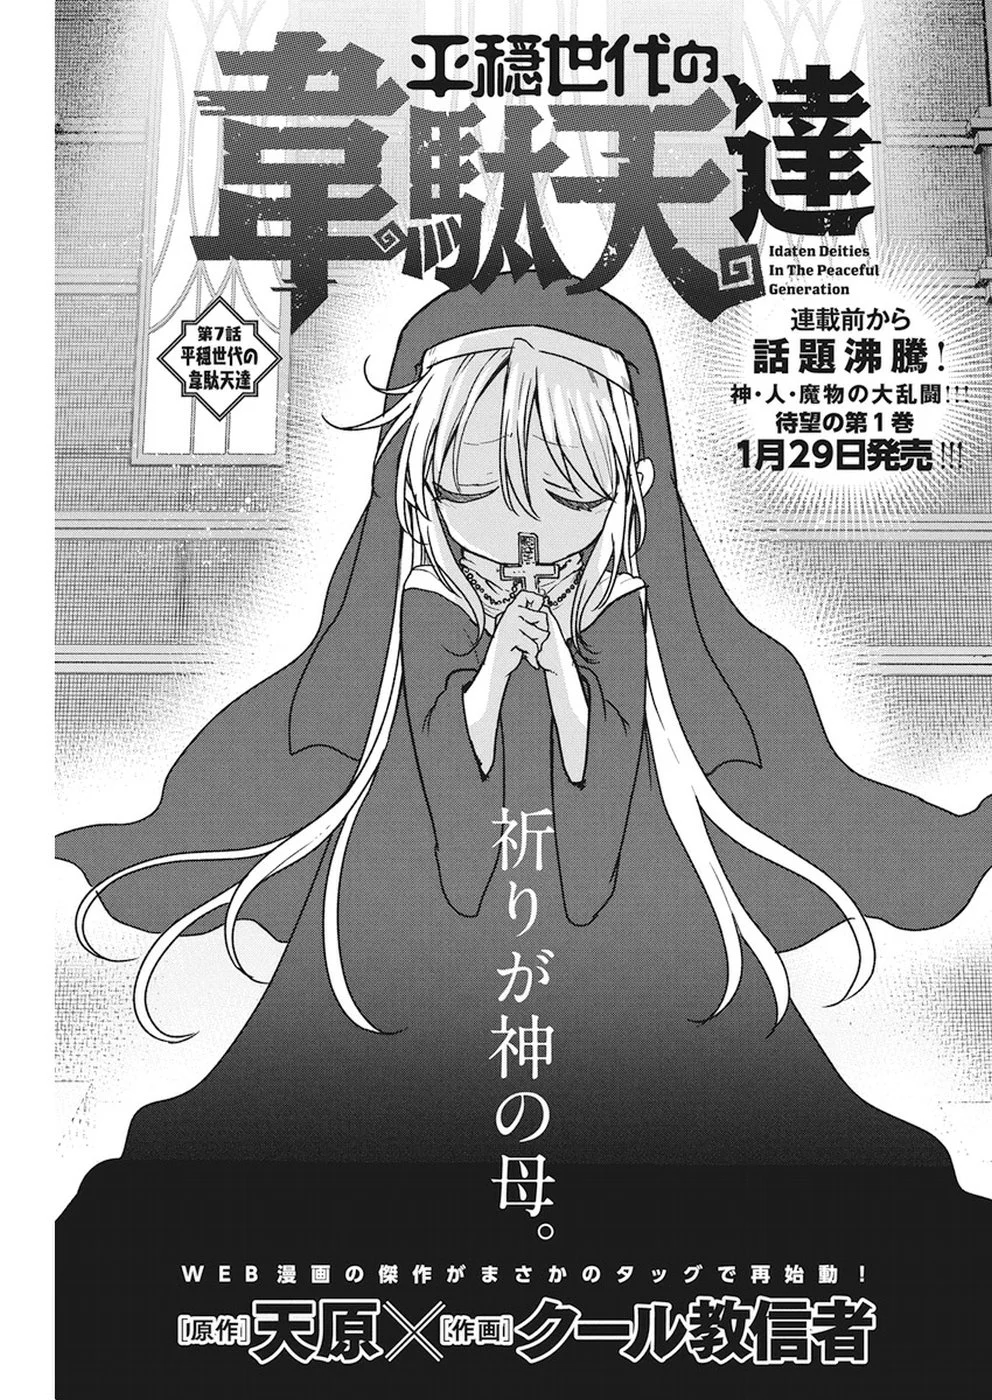 Heion Sedai no Idaten-tachi (The Idaten Deities Know Only Peace) Manga